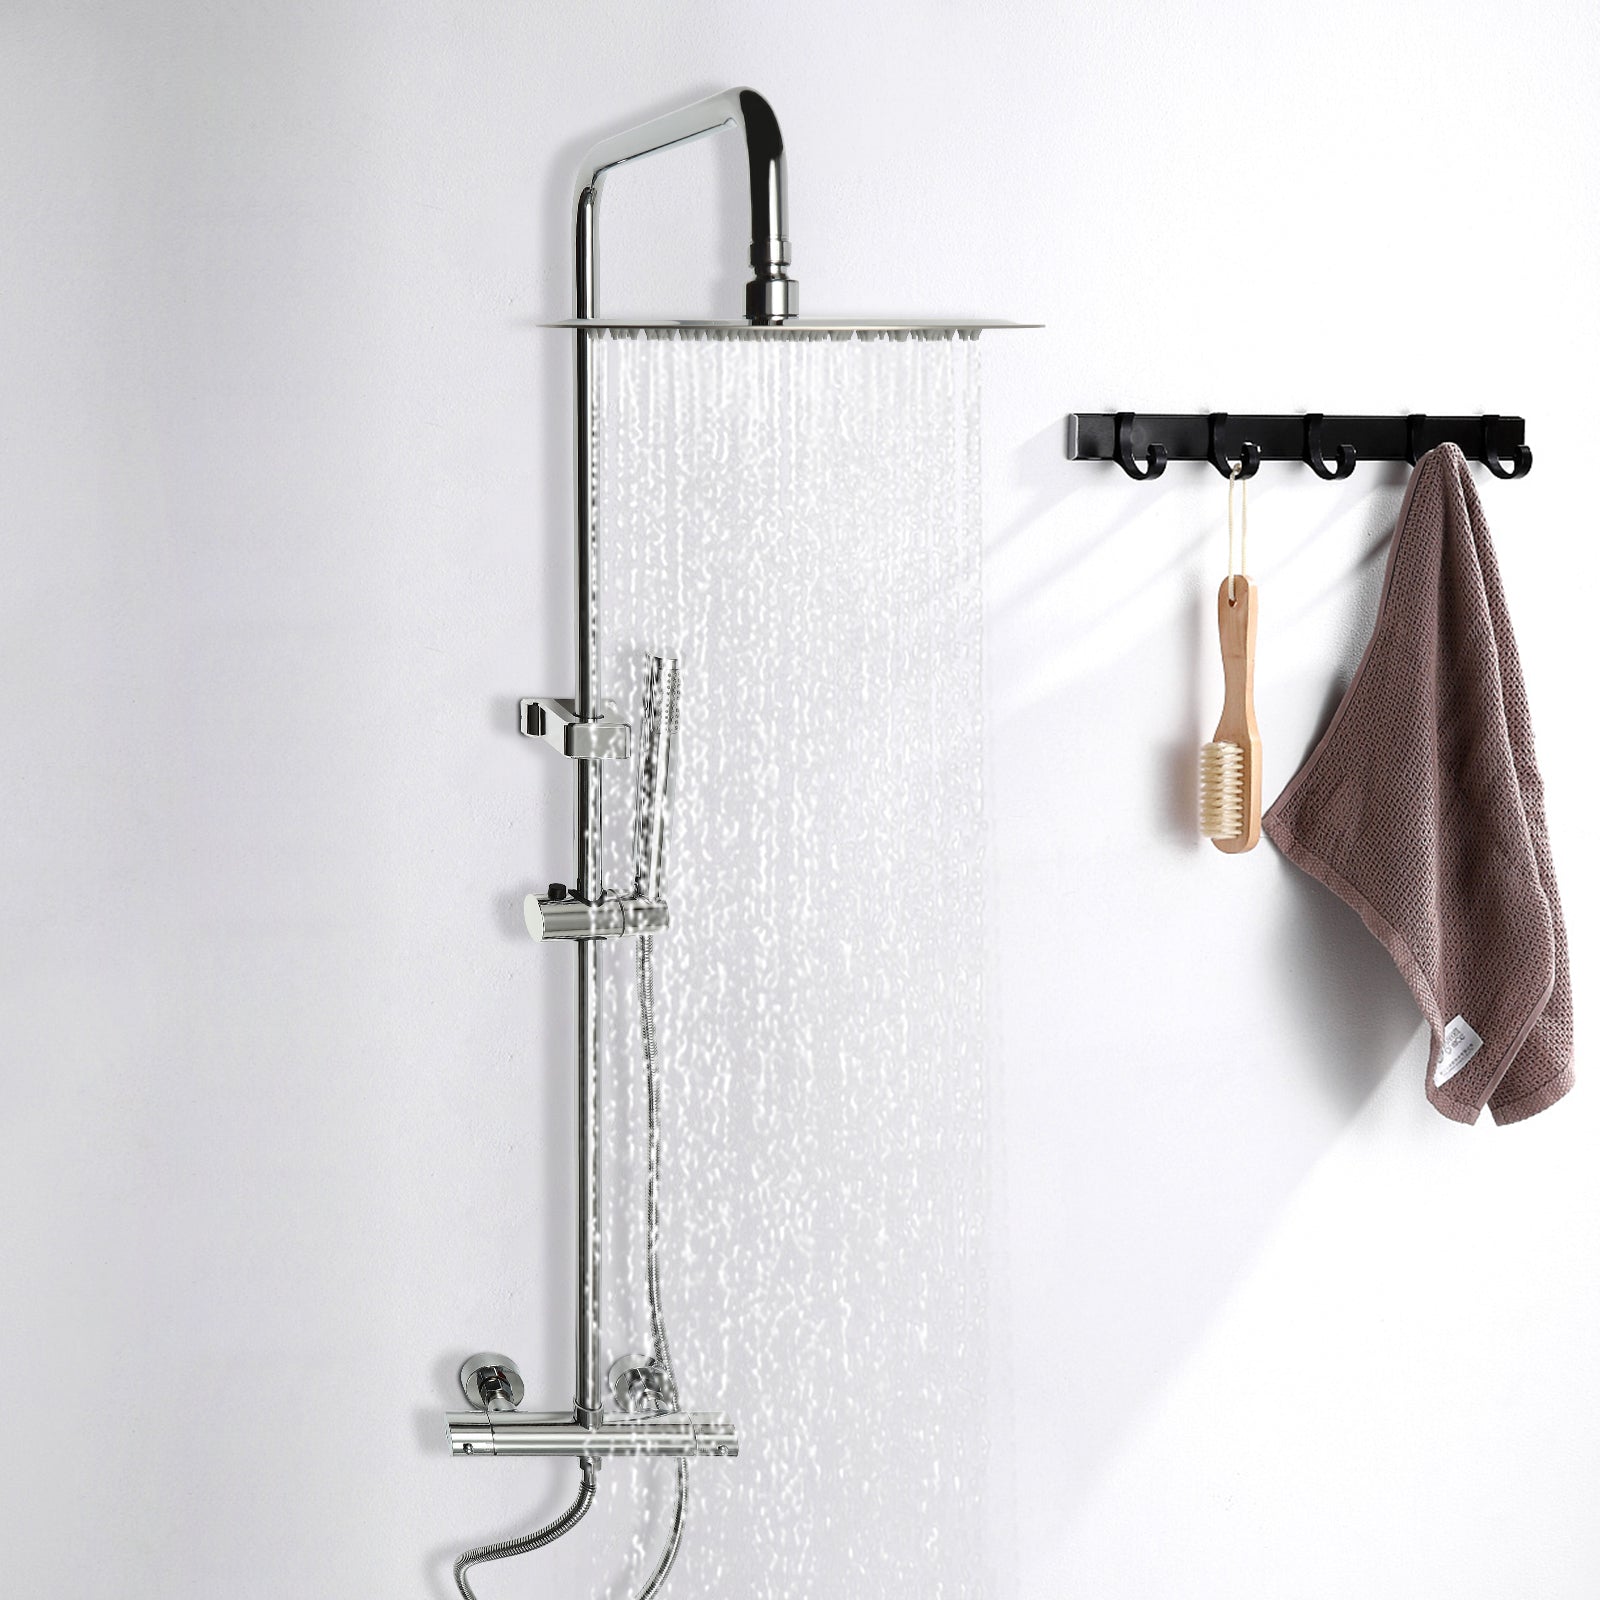 Sistema doccia con termostato, soffione doccia a pioggia , set con soffione doccia a pioggia, 26 cm (argento)